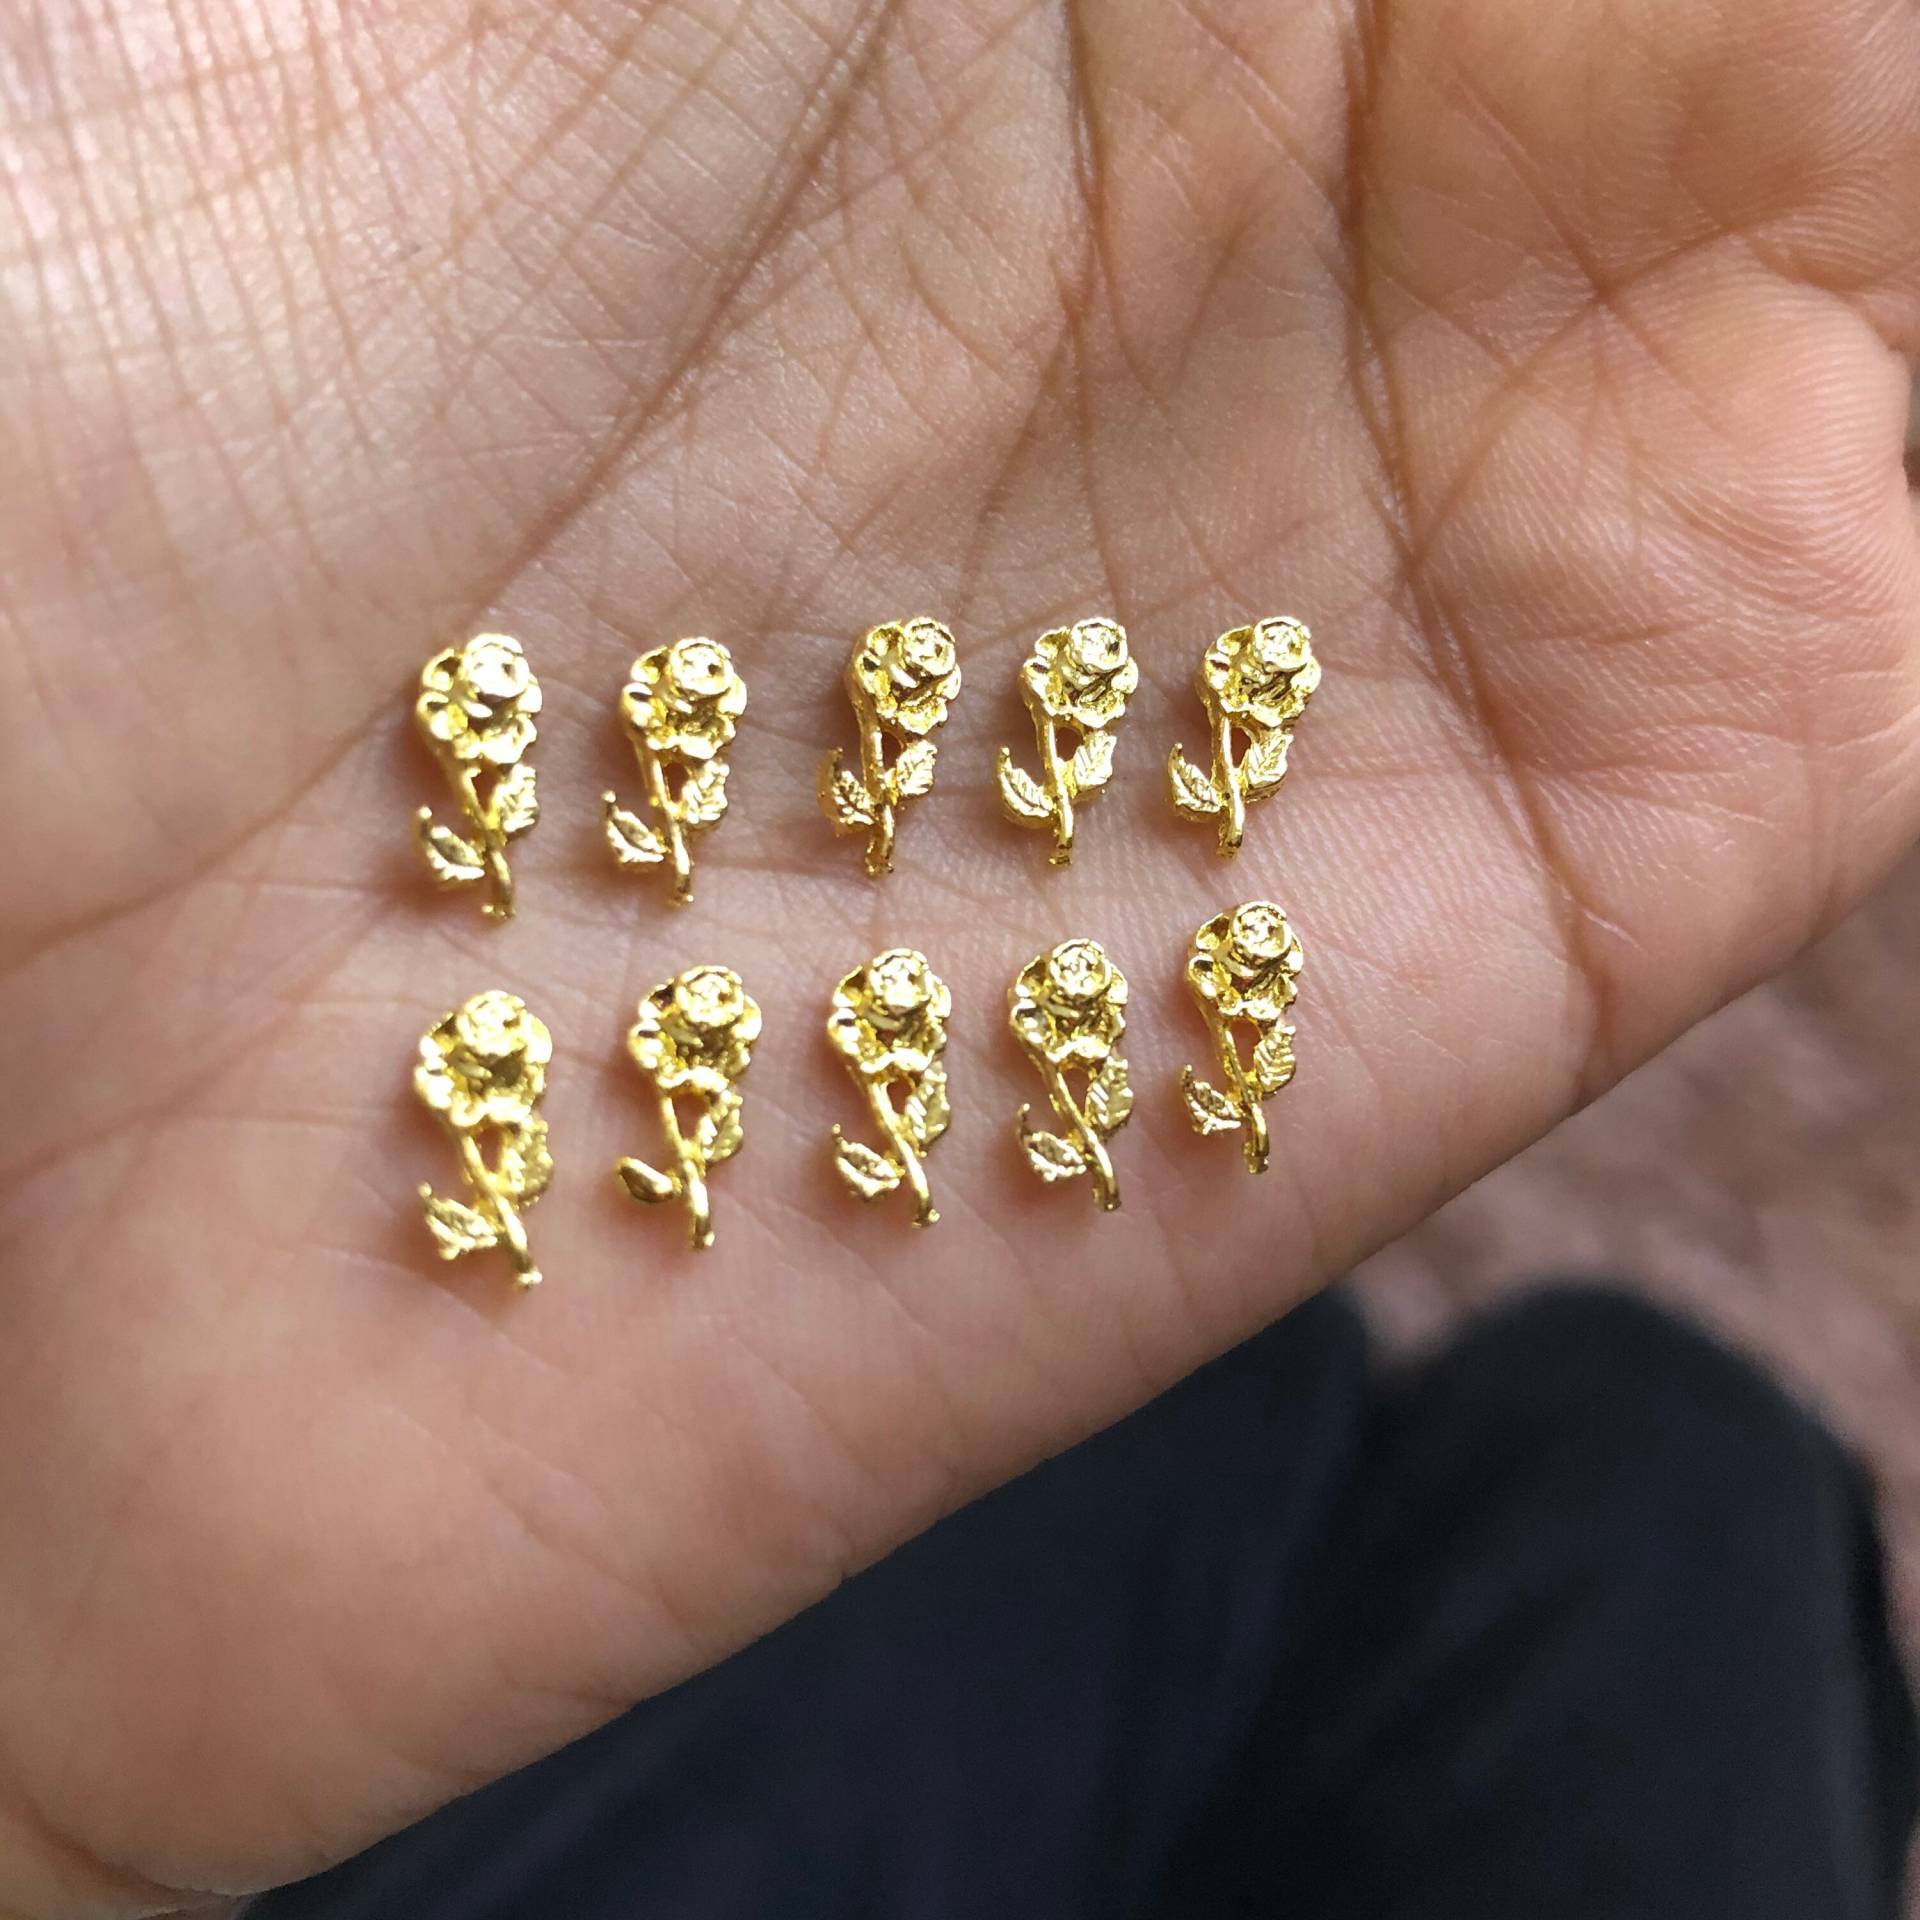 Gold Blüten Charms Für Nail Art - 20stk von Etsy - CometNailSupply